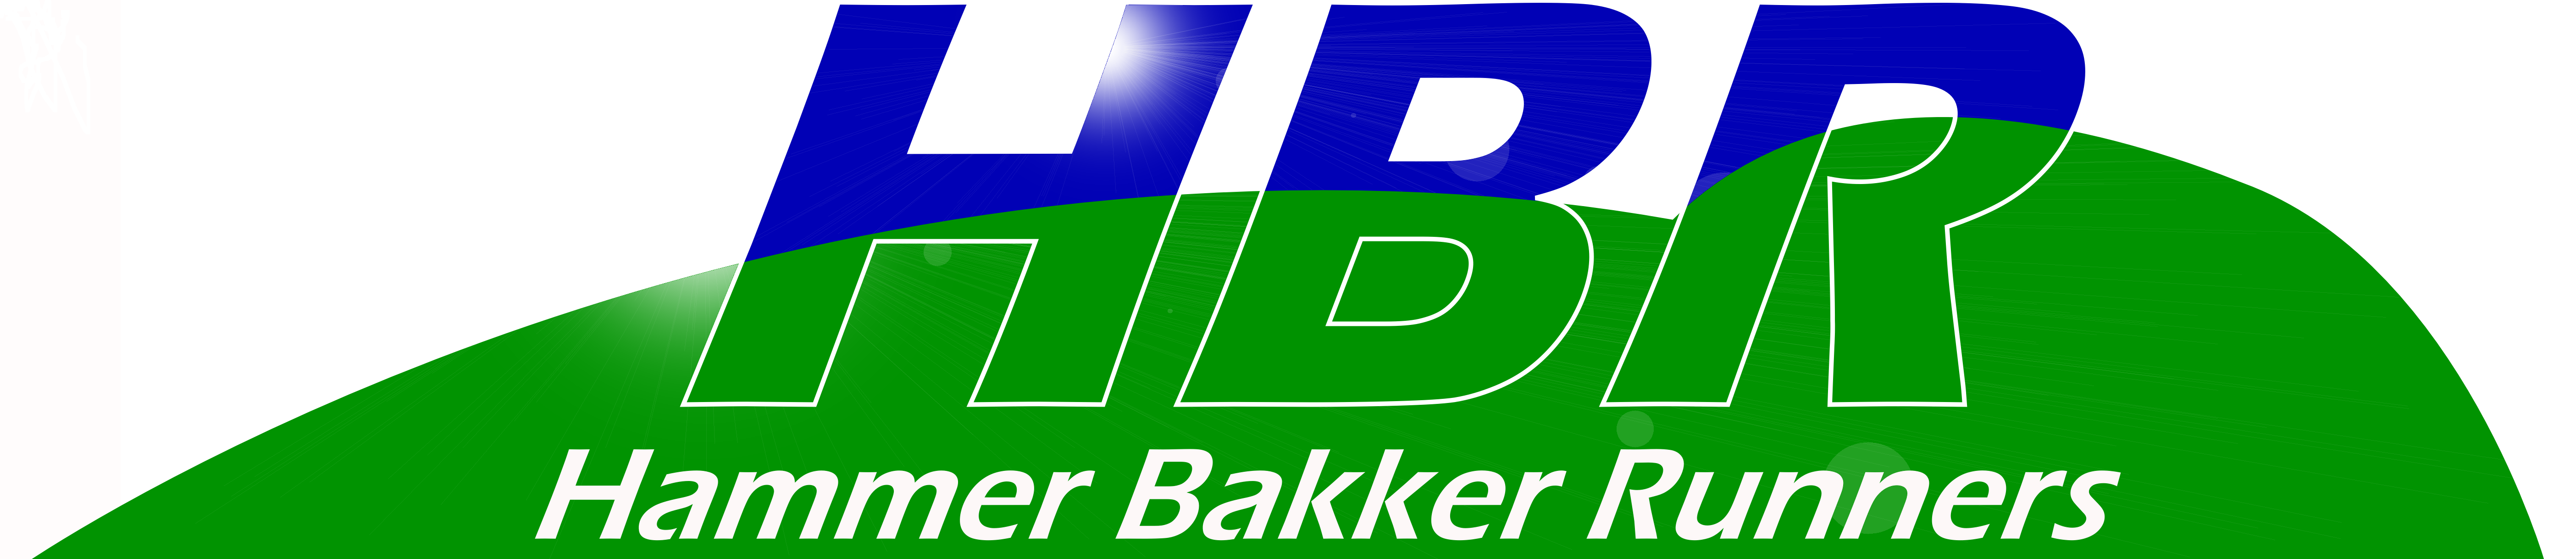 HBR - Hammer Bakker Runners